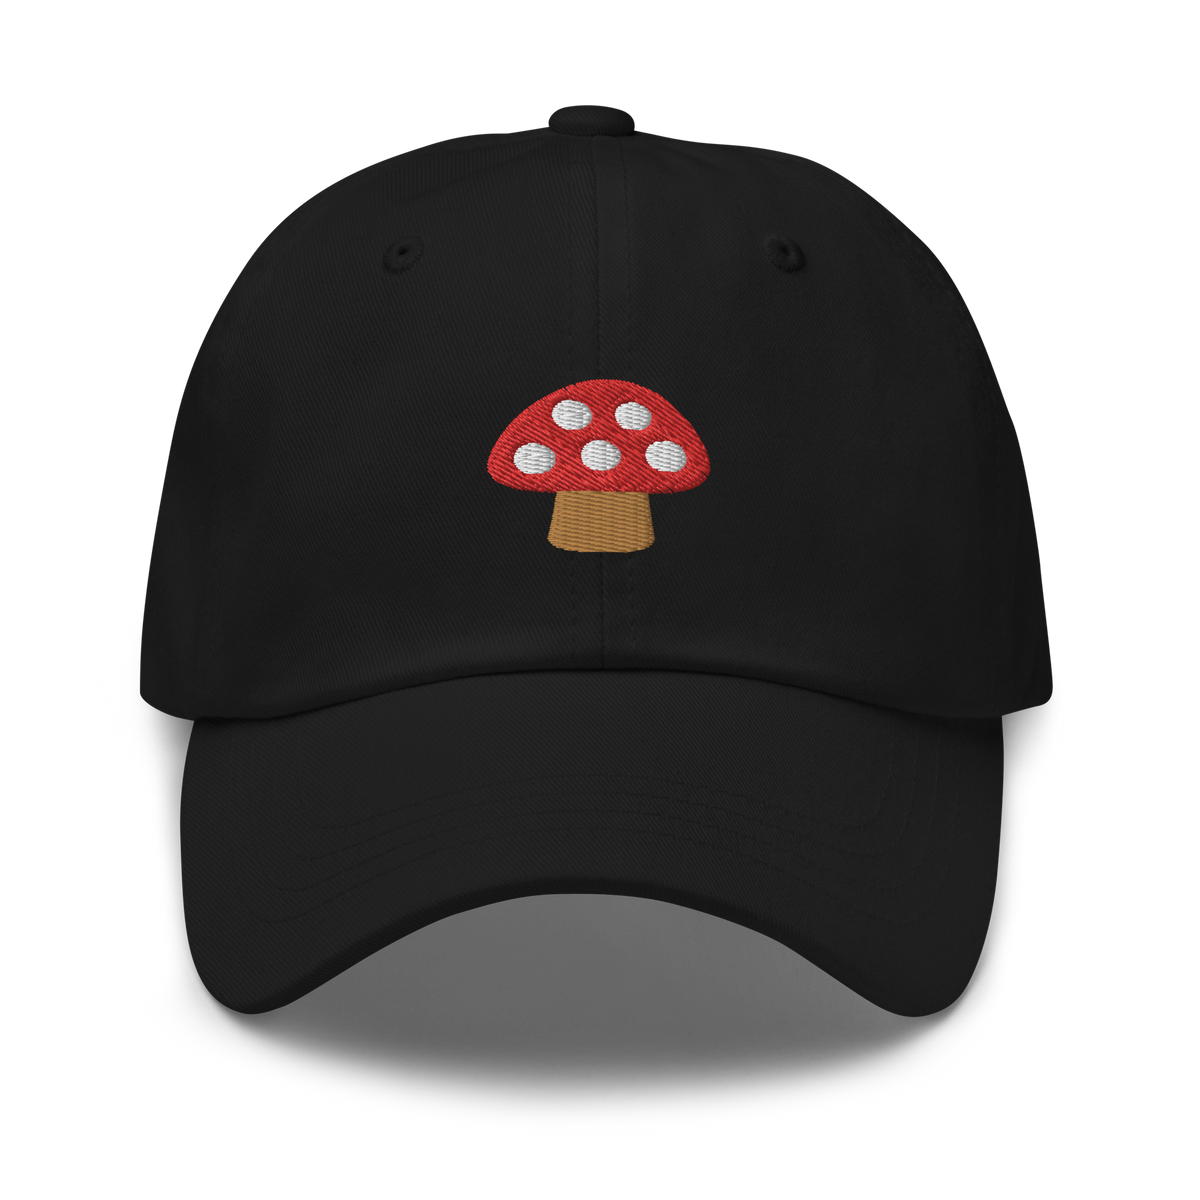 Mushroom Hat